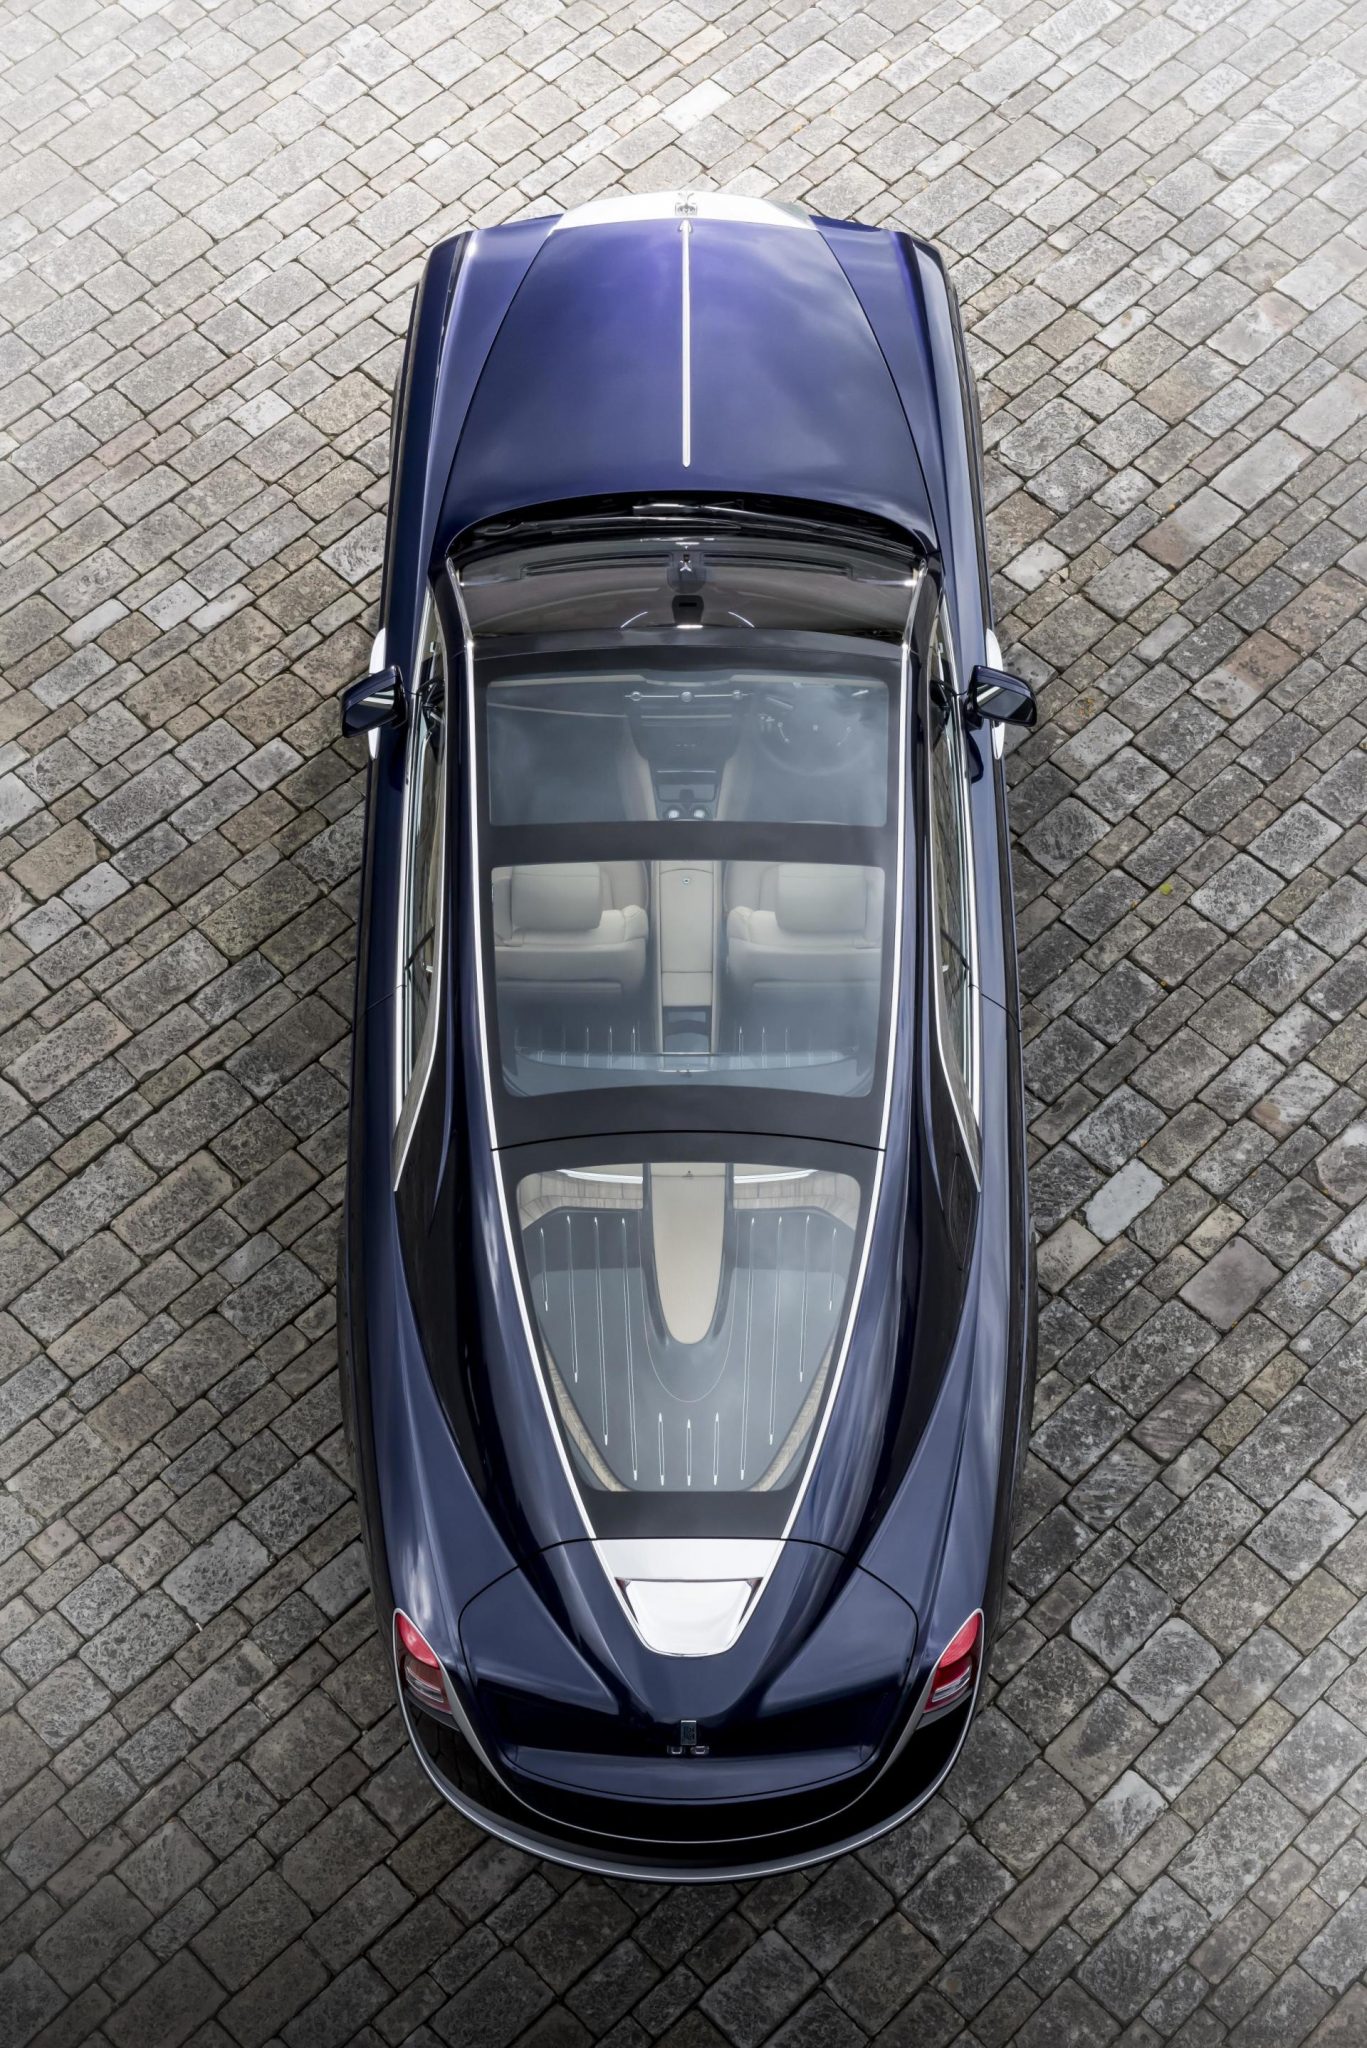 Rolls Royce Sweptail: ¿Estamos ante el coche más caro fabricado hasta la fecha?